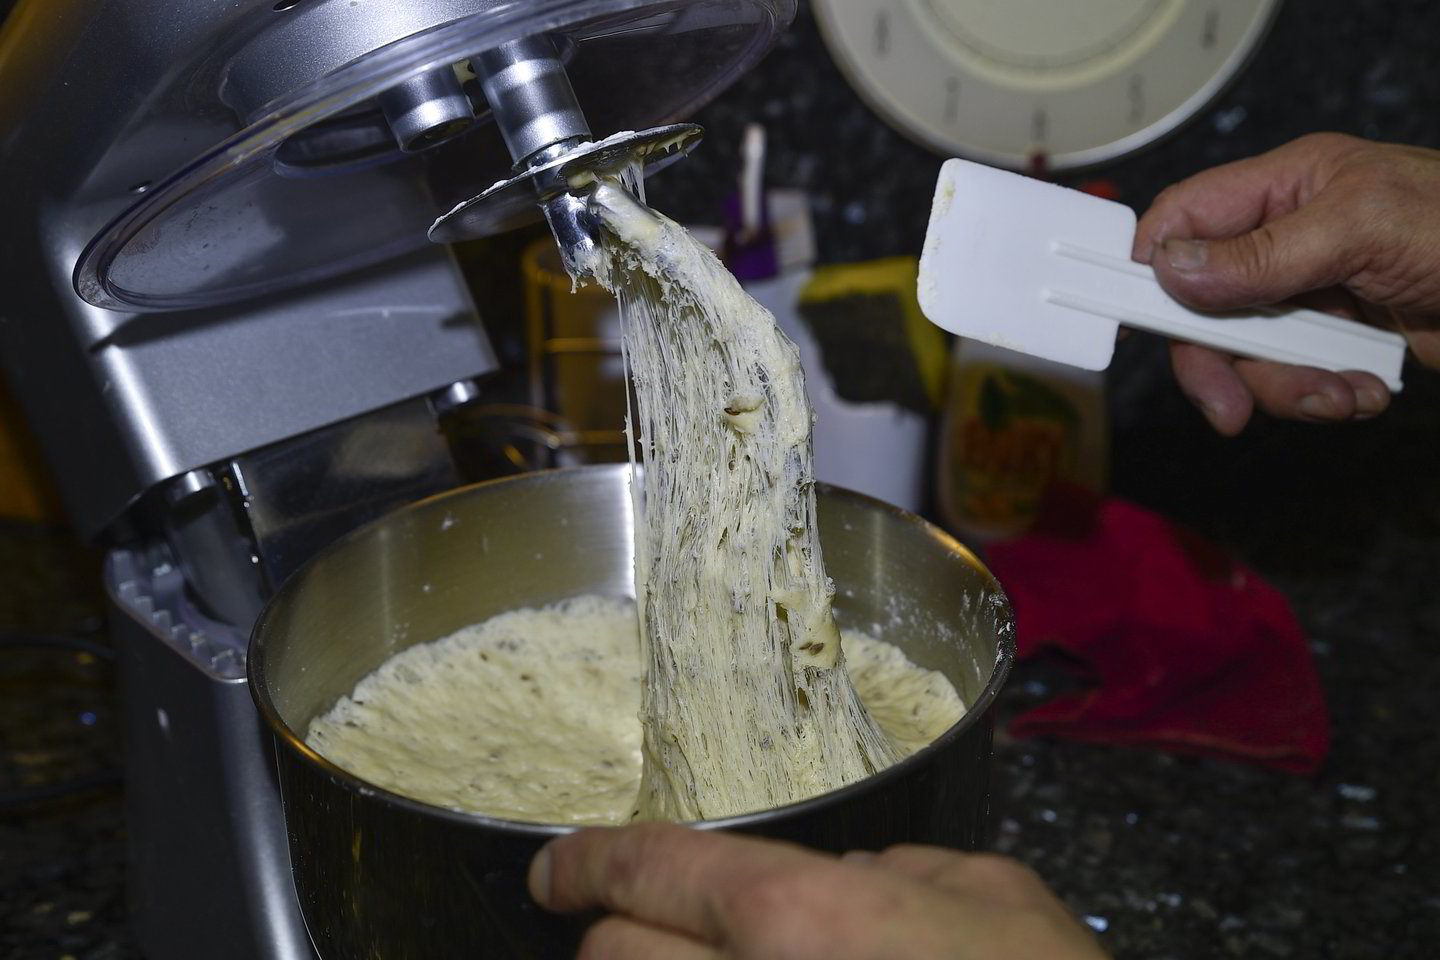 Duonos kepimas R.Mickevičiui – viena švariausių maisto gaminimo procedūrų, nes nereikia ilgai gaišti plaunant nešvarius indus. <br>V.Ščiavinsko nuotr.